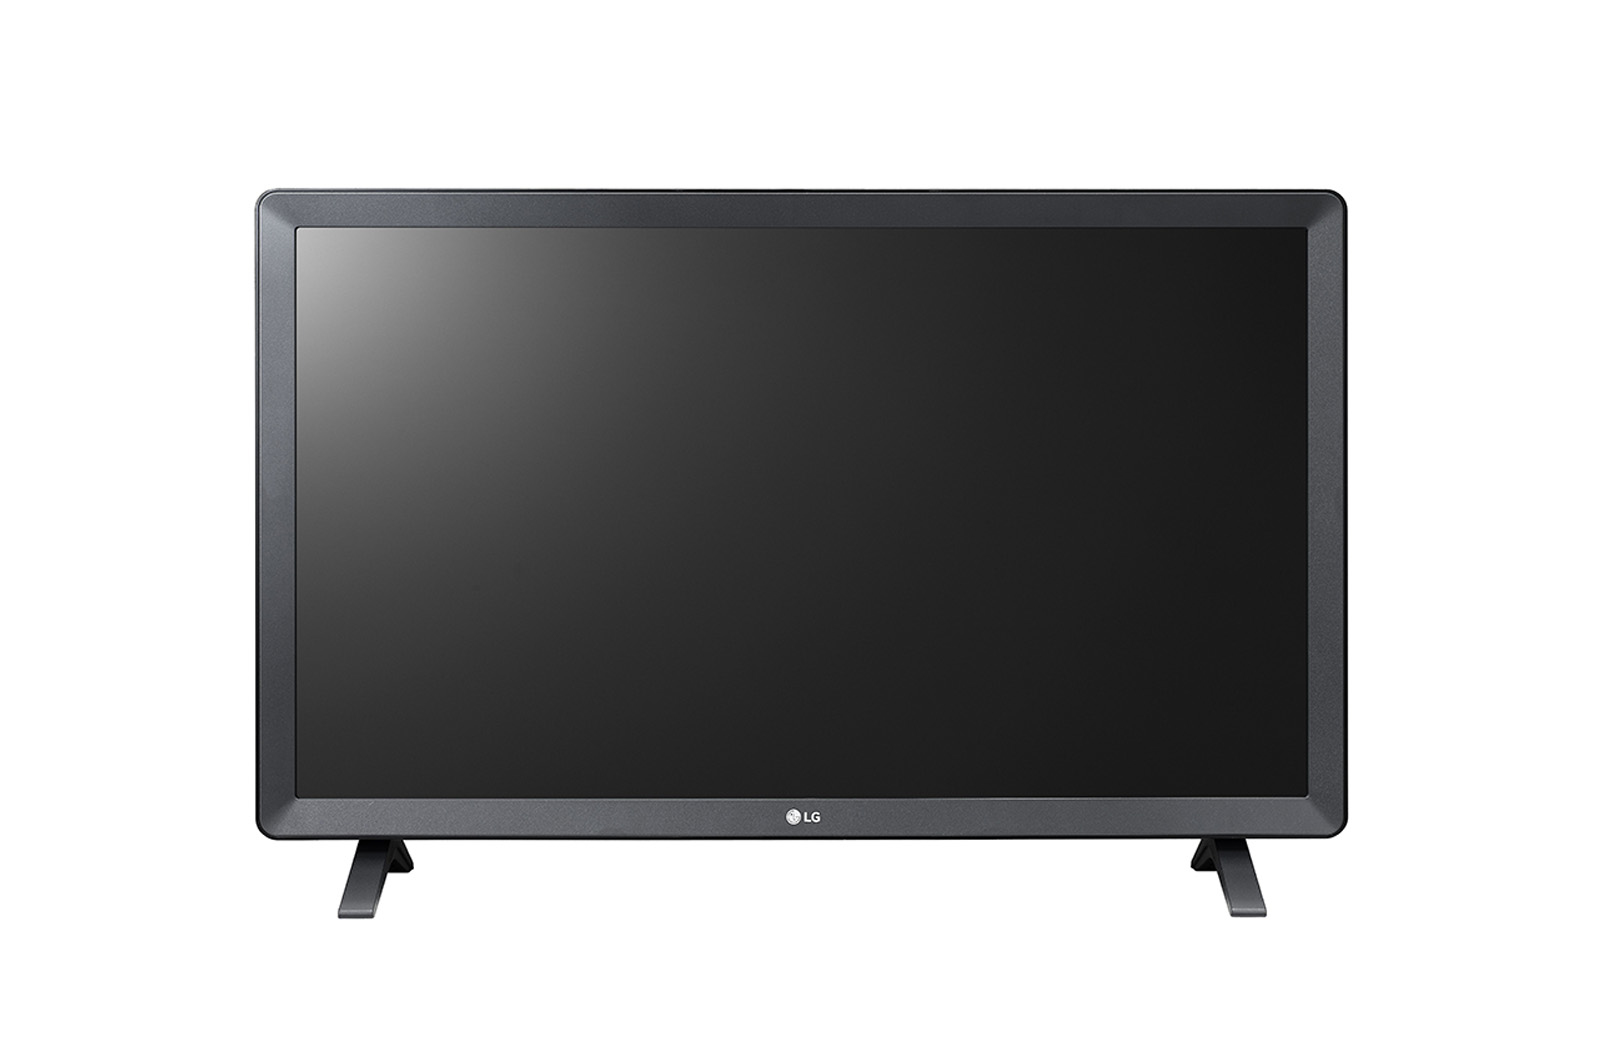 LG 24TL520S-PU TV